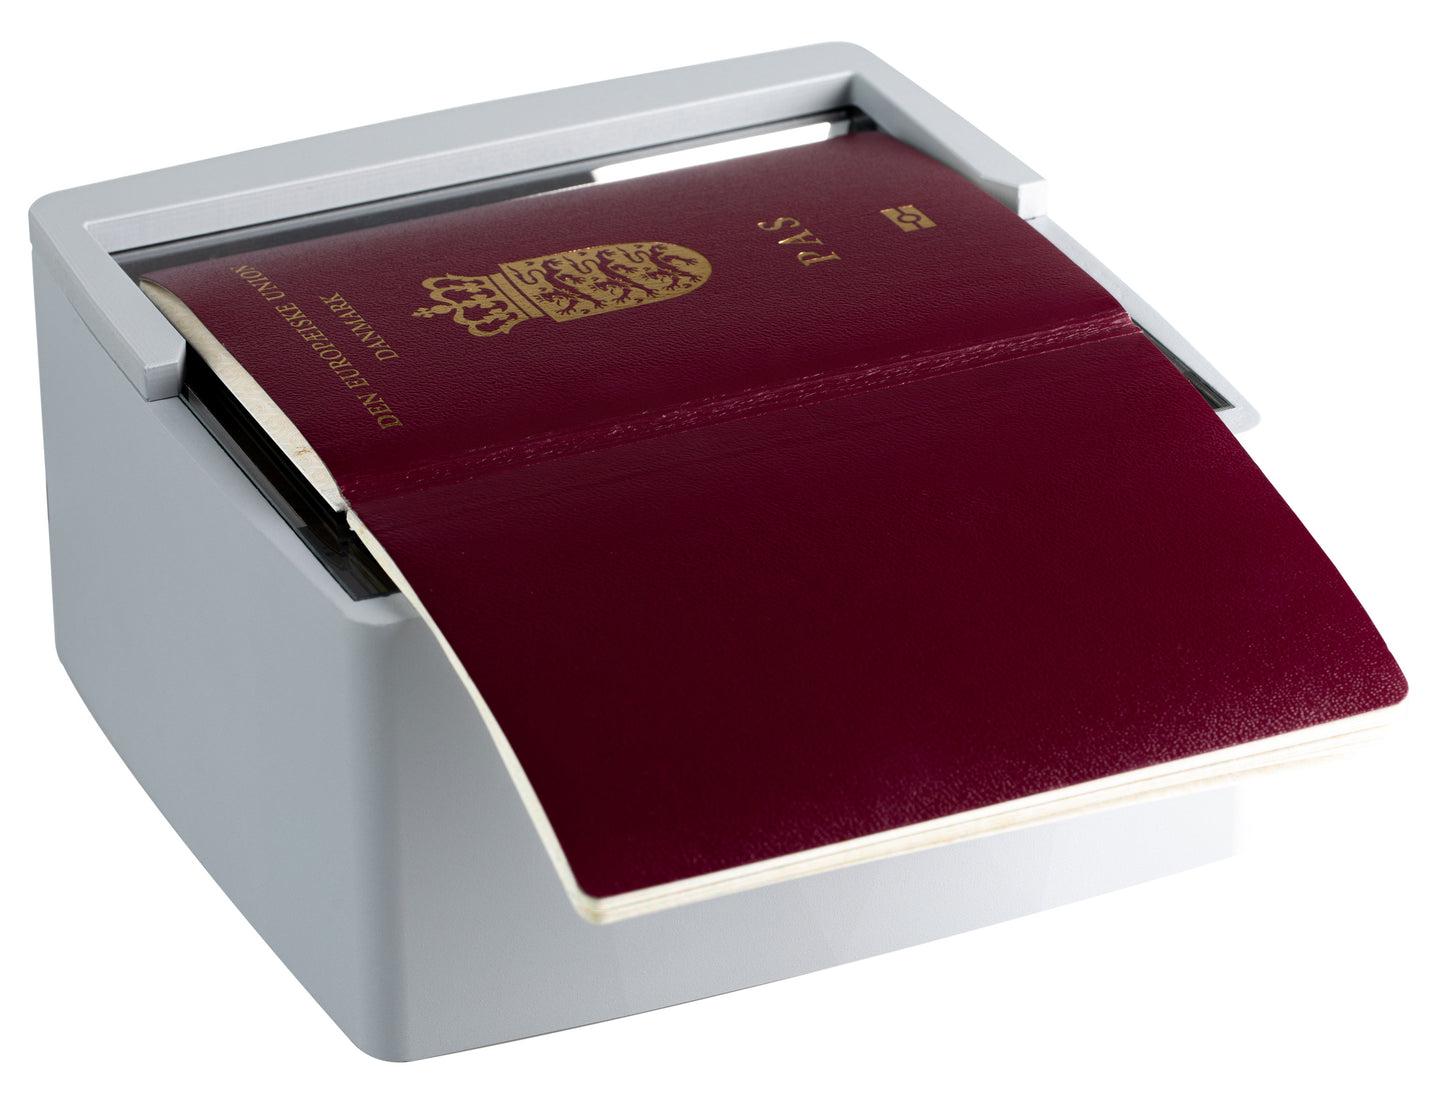 SnapShell® P5: Passport Data Extraction